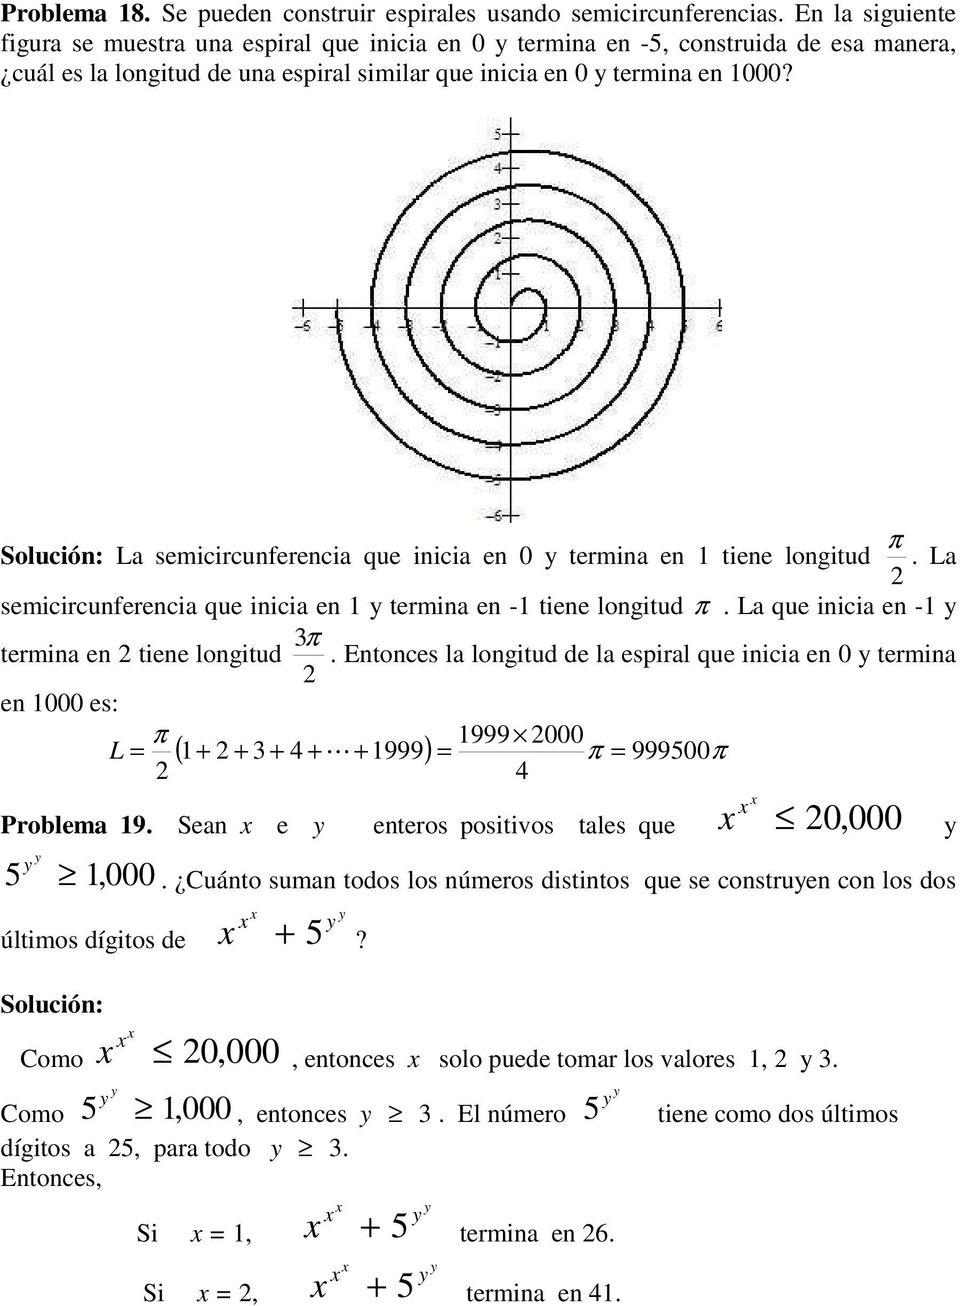 π Solució: La semicircuferecia que iicia e 0 termia e tiee logitud. La semicircuferecia que iicia e termia e - tiee logitud π. La que iicia e - π termia e tiee logitud.